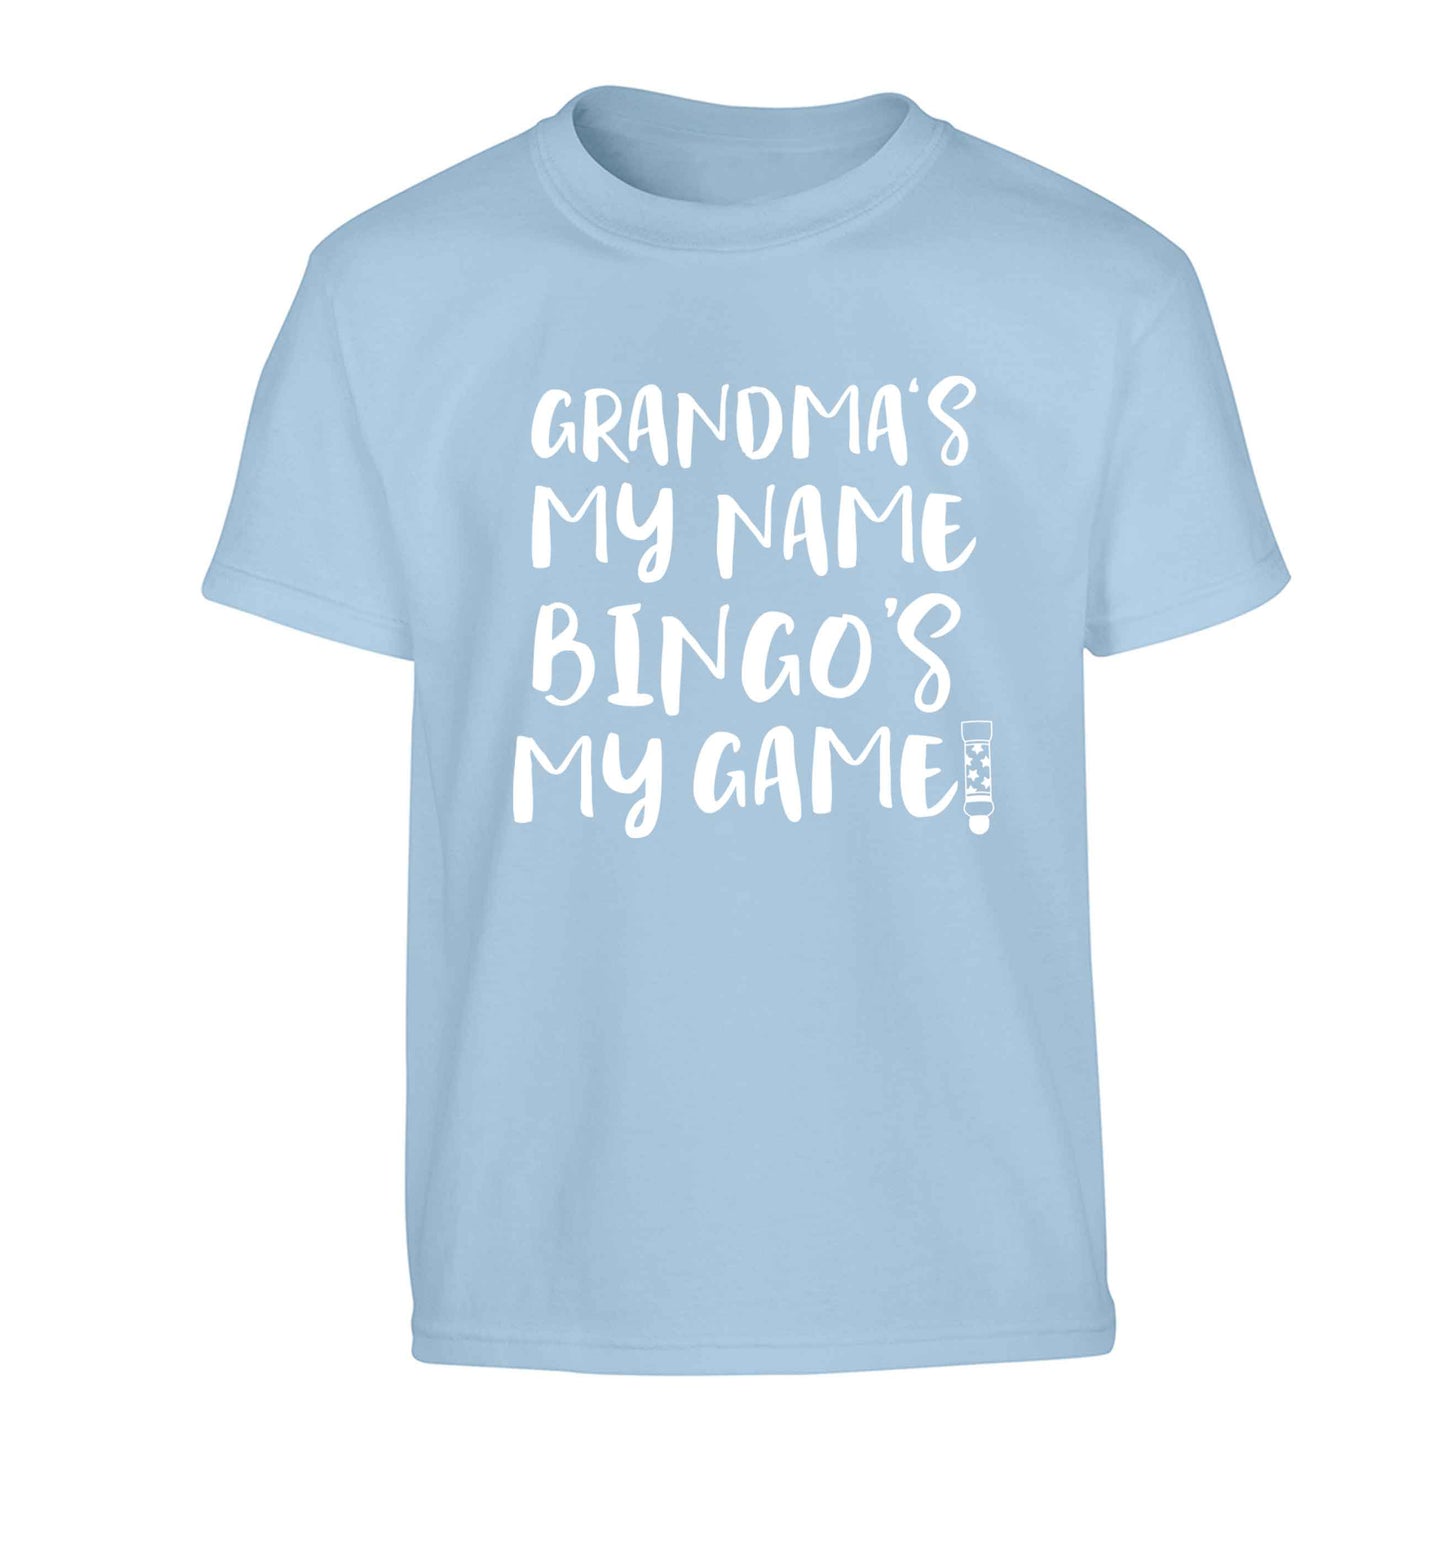 Grandma's my name bingo's my game! Children's light blue Tshirt 12-13 Years